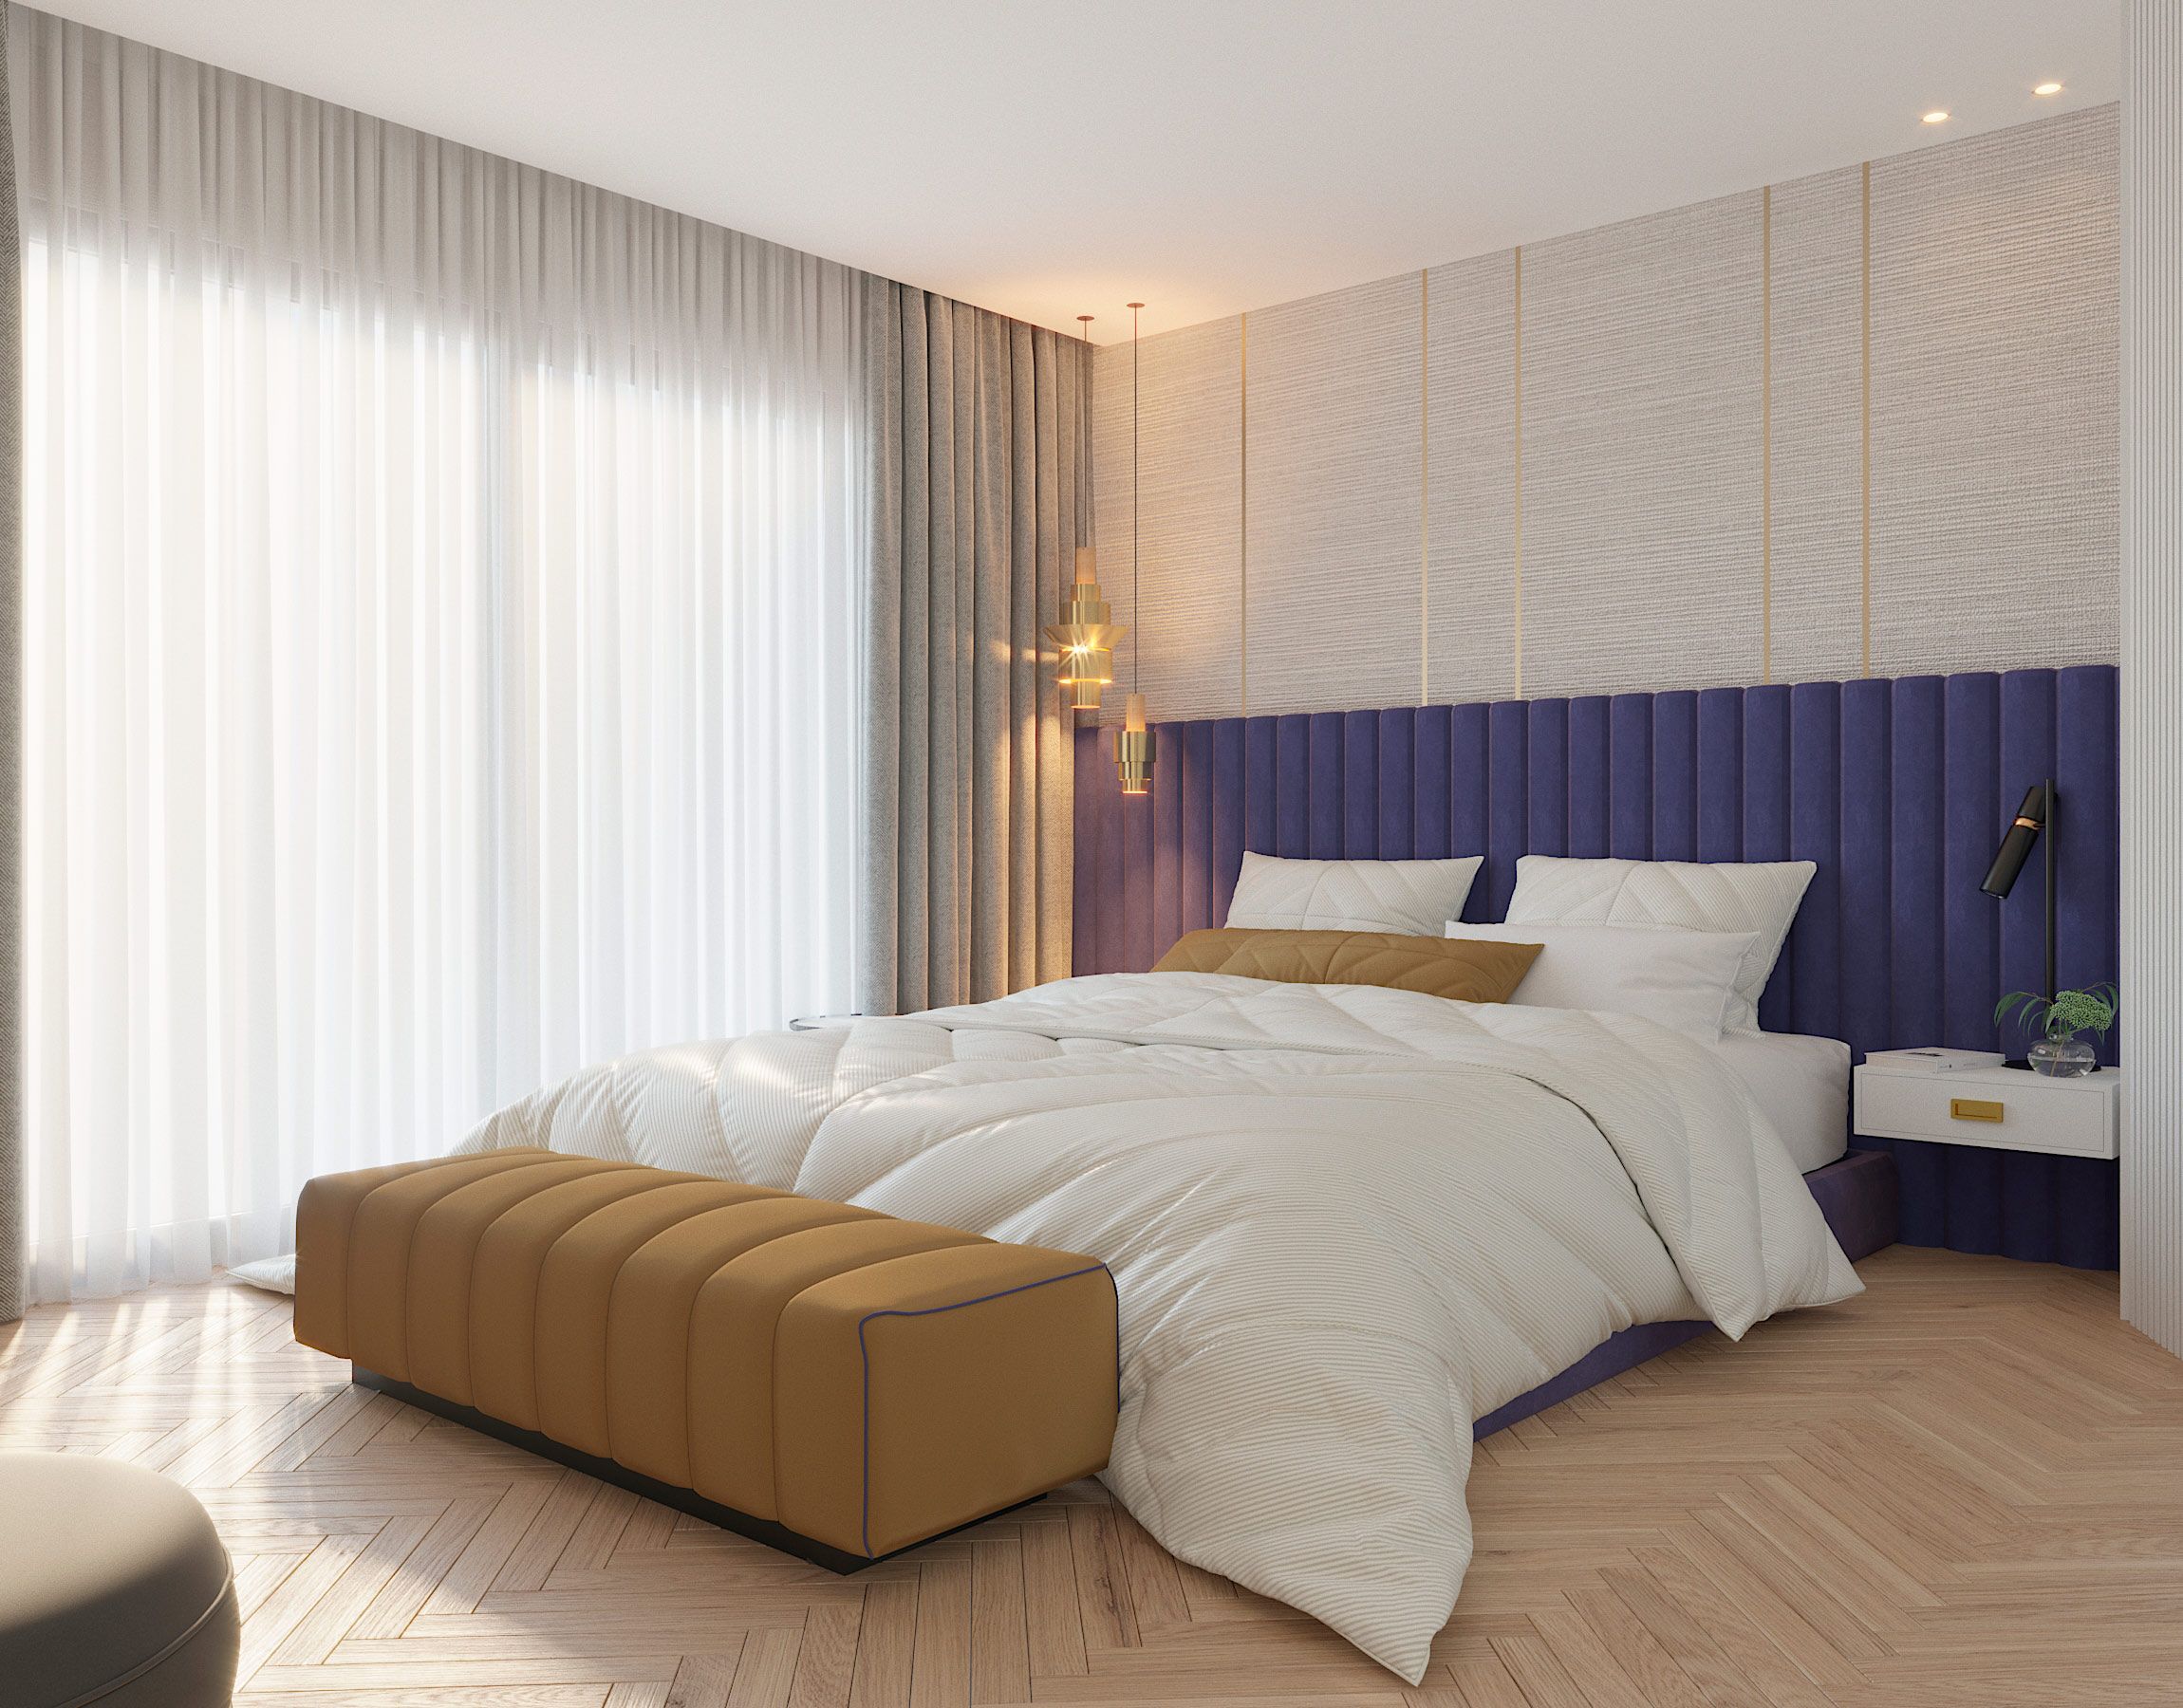 Dormitorios suite modernos